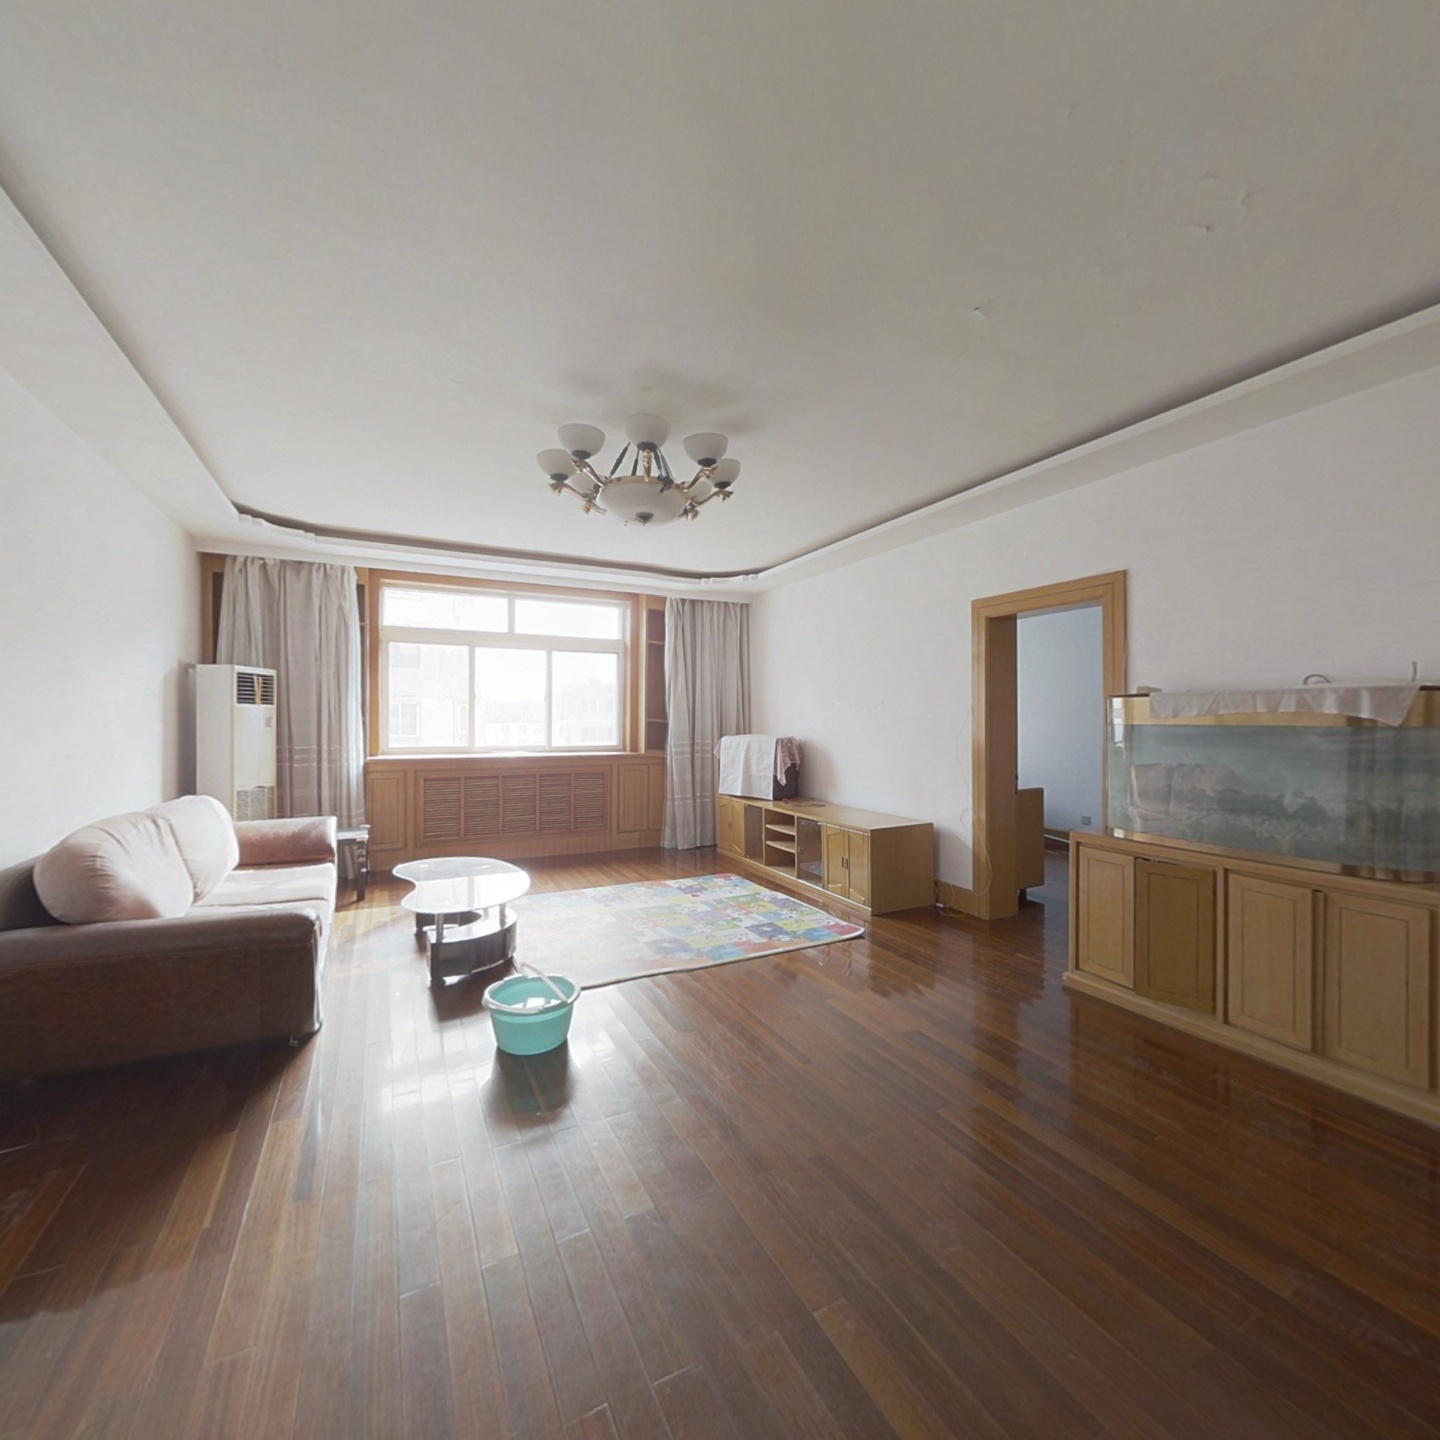 翠竹小区中间楼层户型标准，客厅敞亮，保持干净